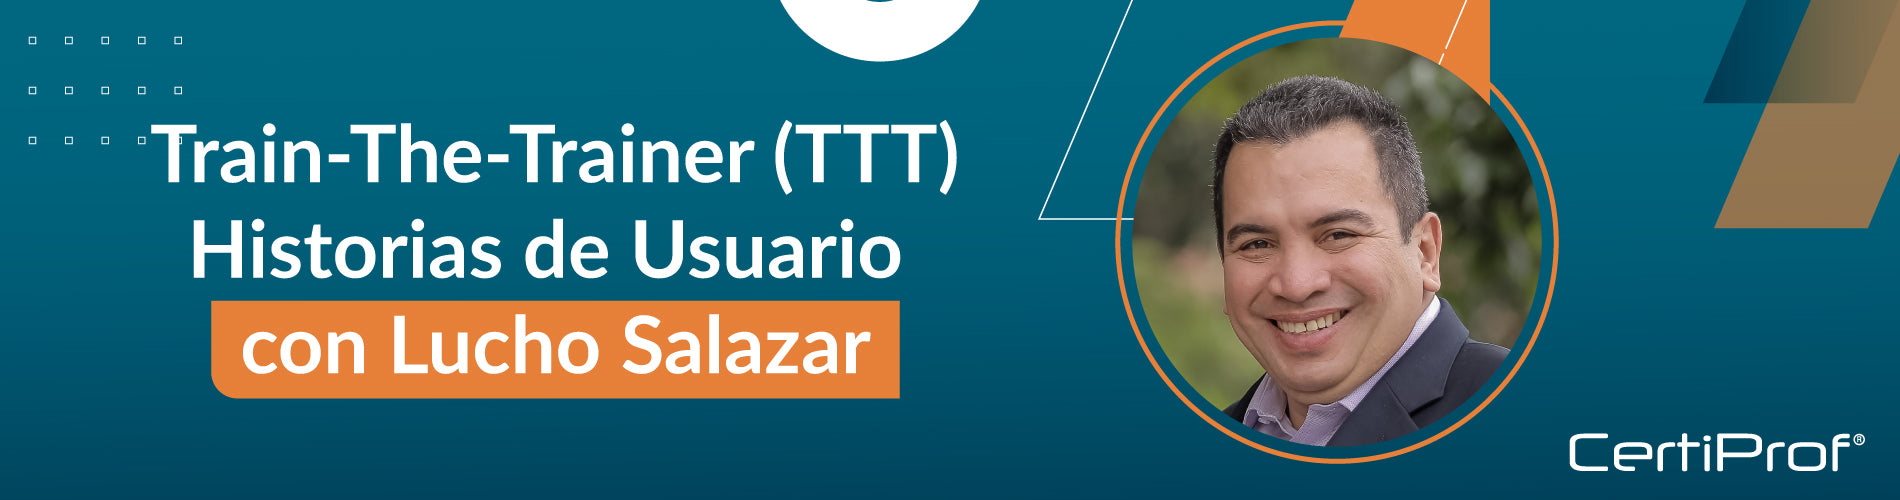 Próximas sesiones Train-The-Trainer (TTT) de CertiProf en Chile y Colombia